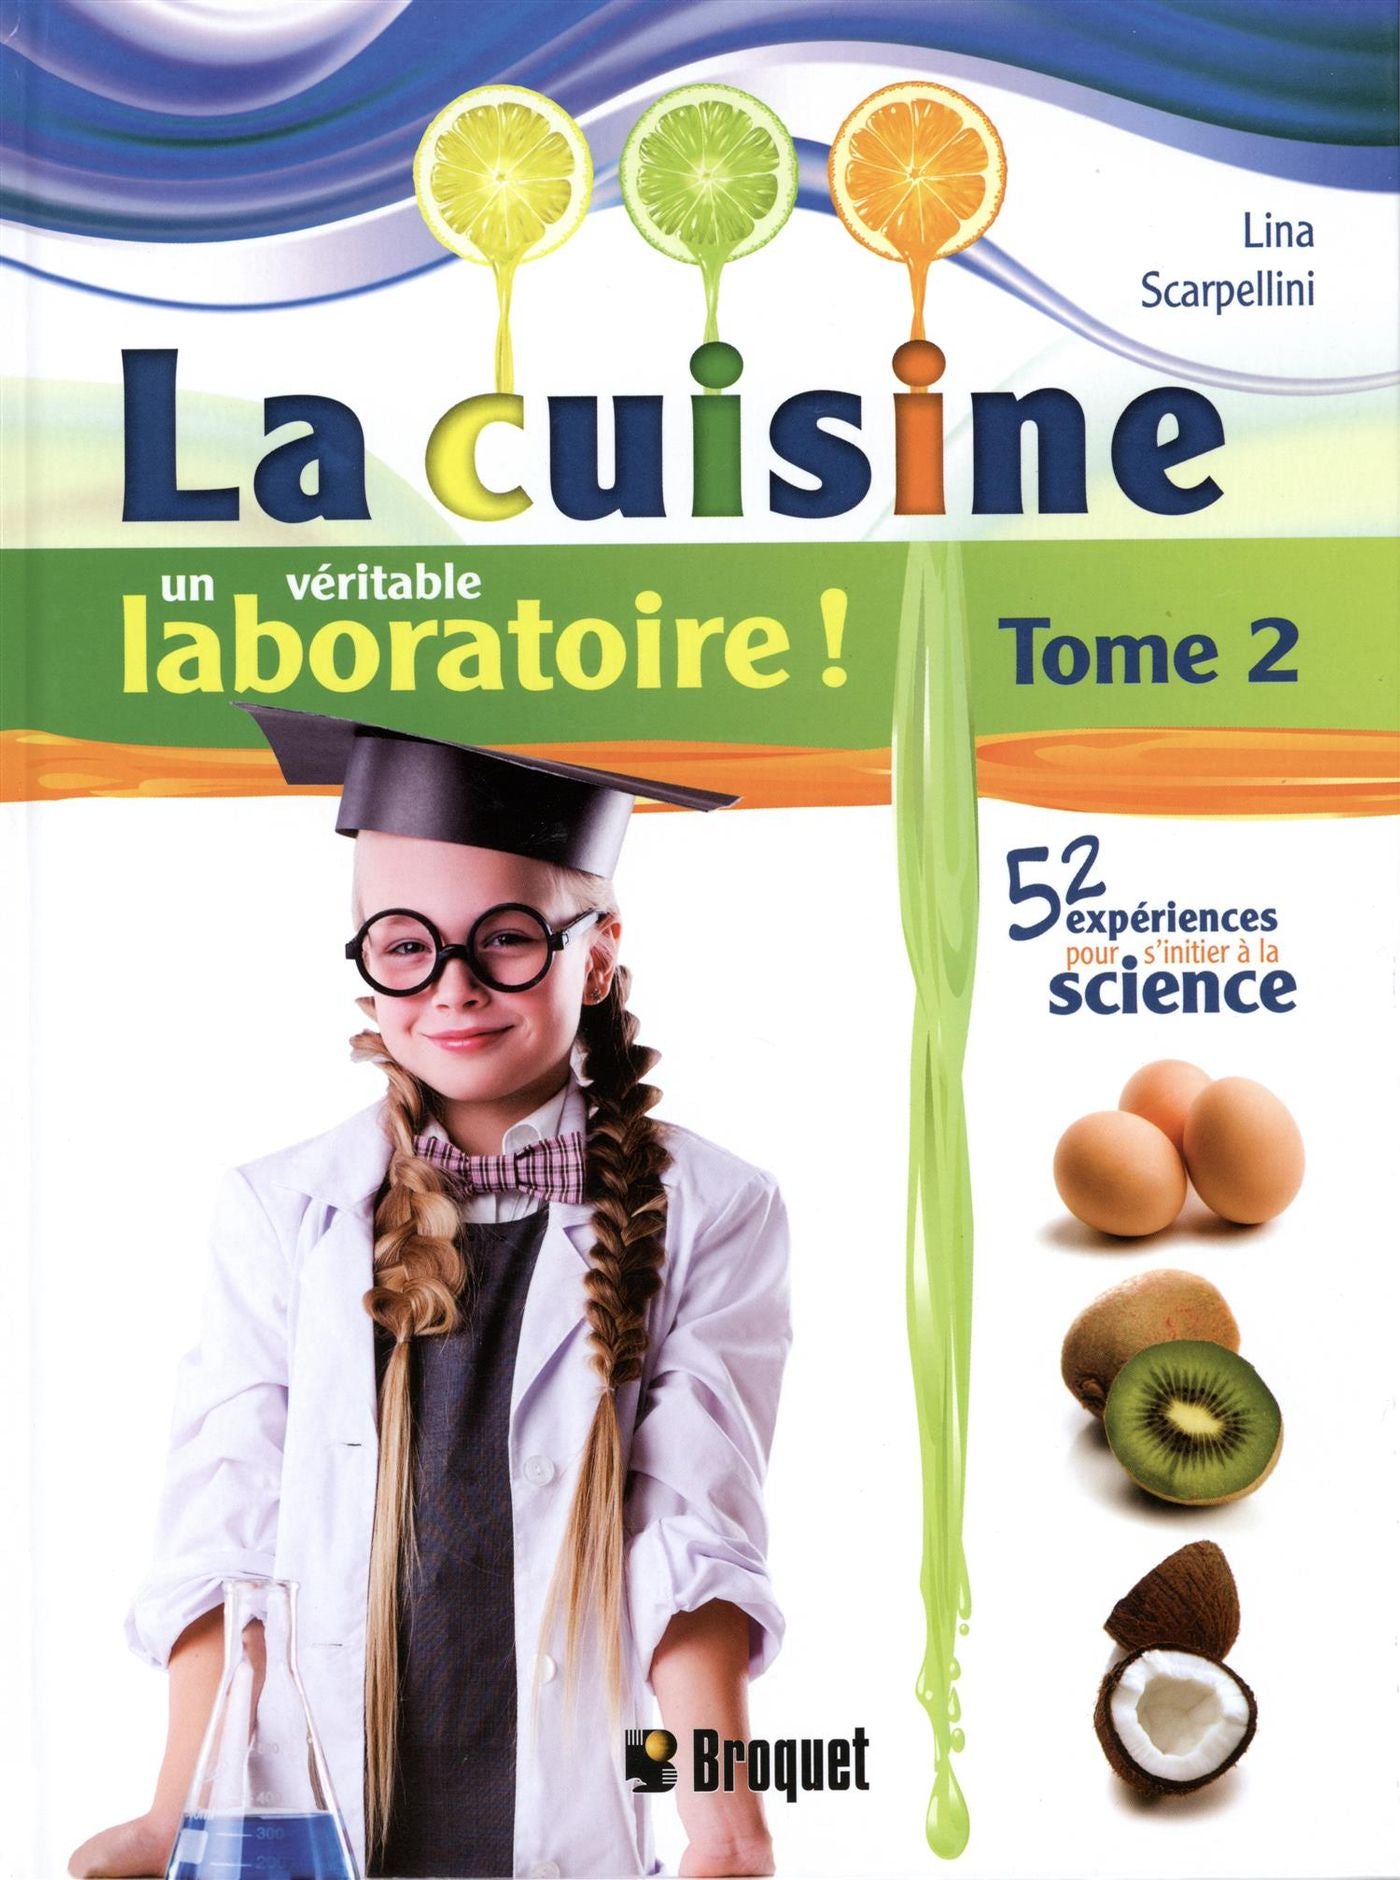 La cuisine, un véritable laboratoire! # 2 - Lina Scarpellini